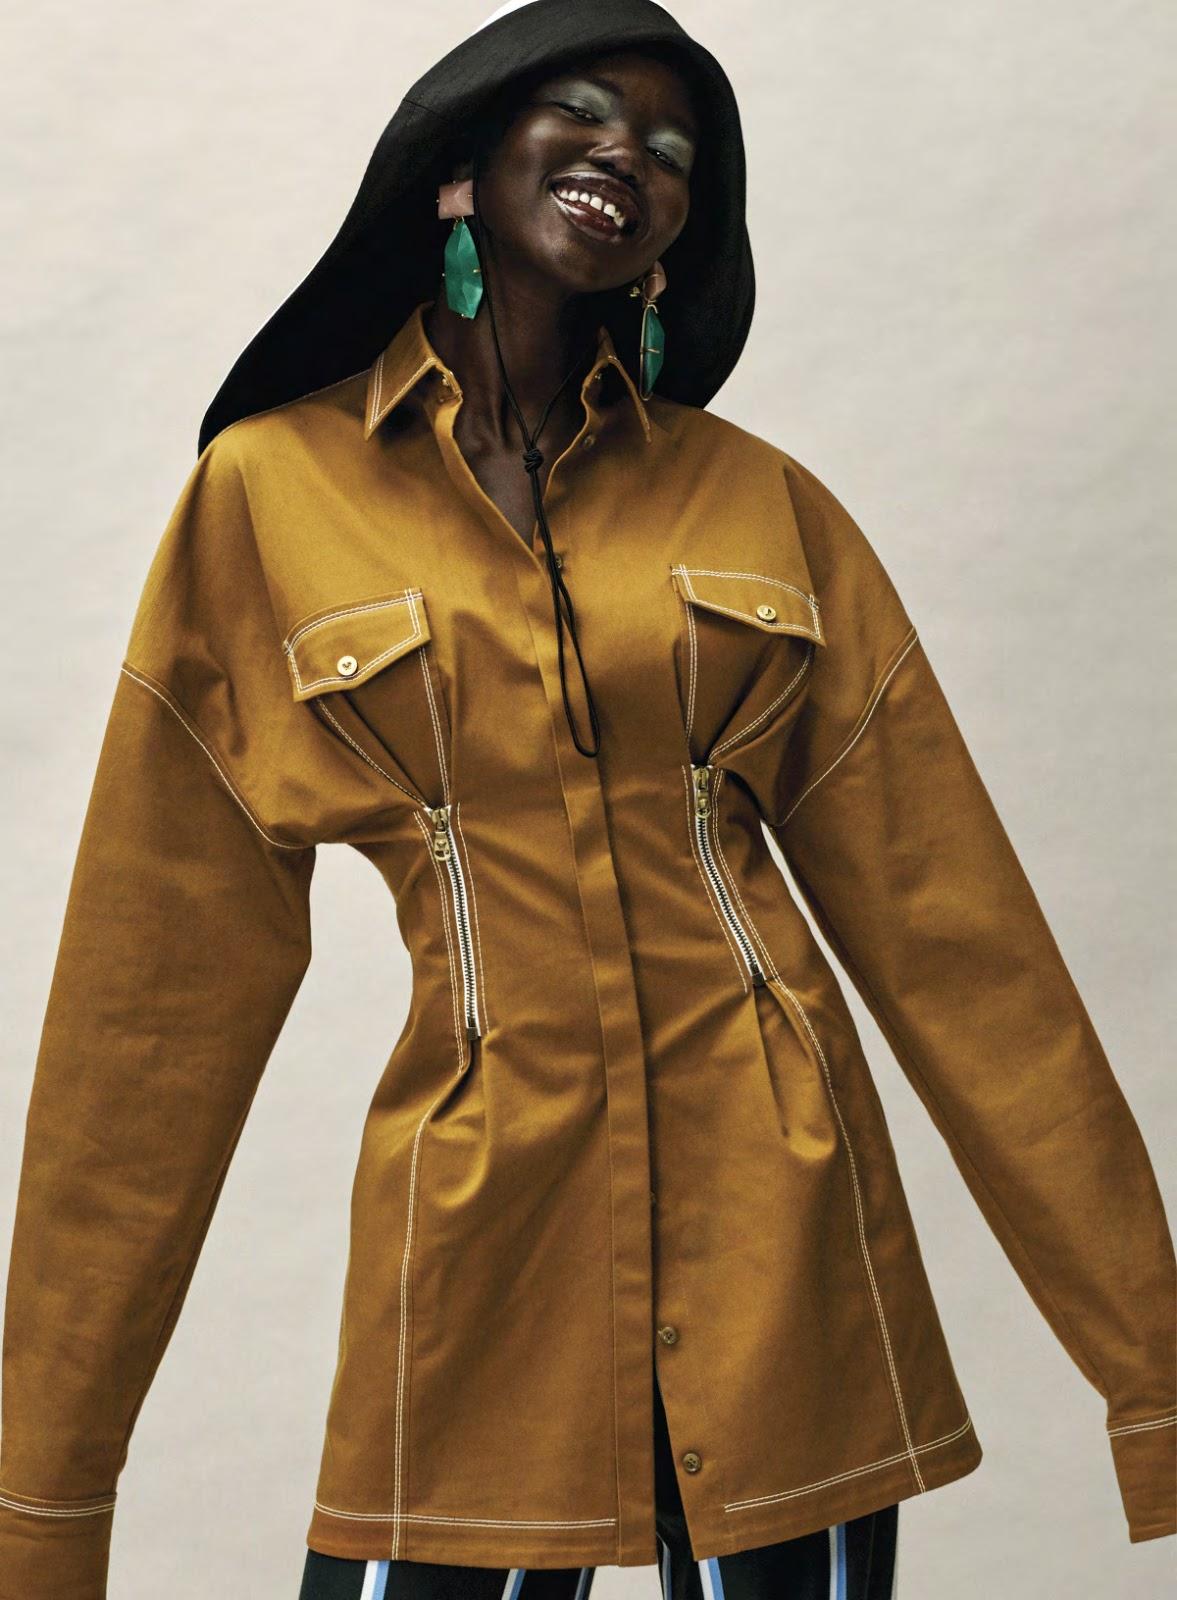 Adut Akech in Vogue USA January 2019